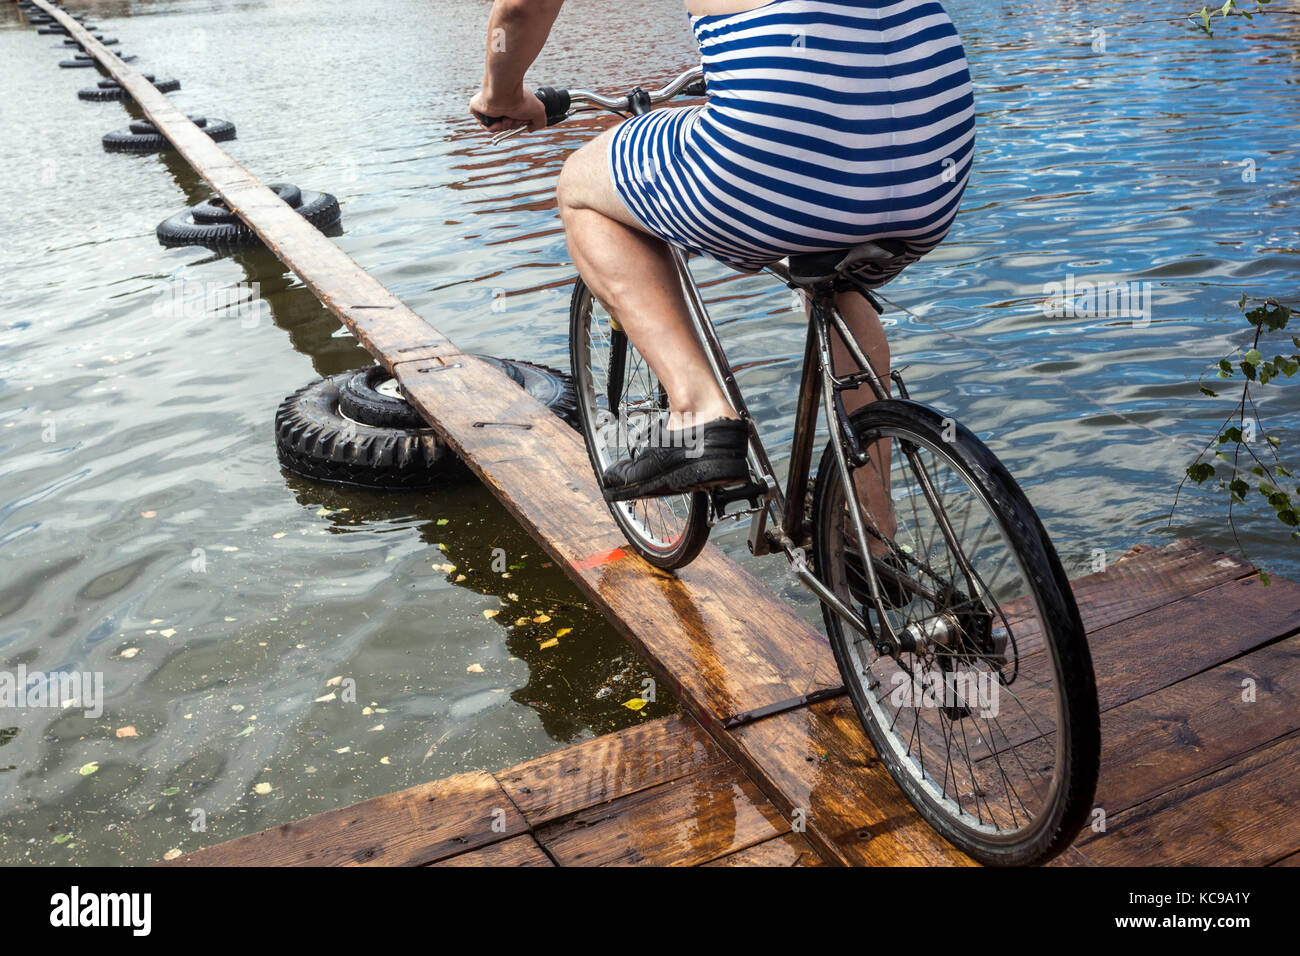 Tschechisches Festival, Ein Radfahrer auf einer hölzernen Fußbrücke versucht, den Teich zu überqueren, ein ungewöhnliches Sportrad über das Wasser, ein Fahrradanzug gestreift Stockfoto